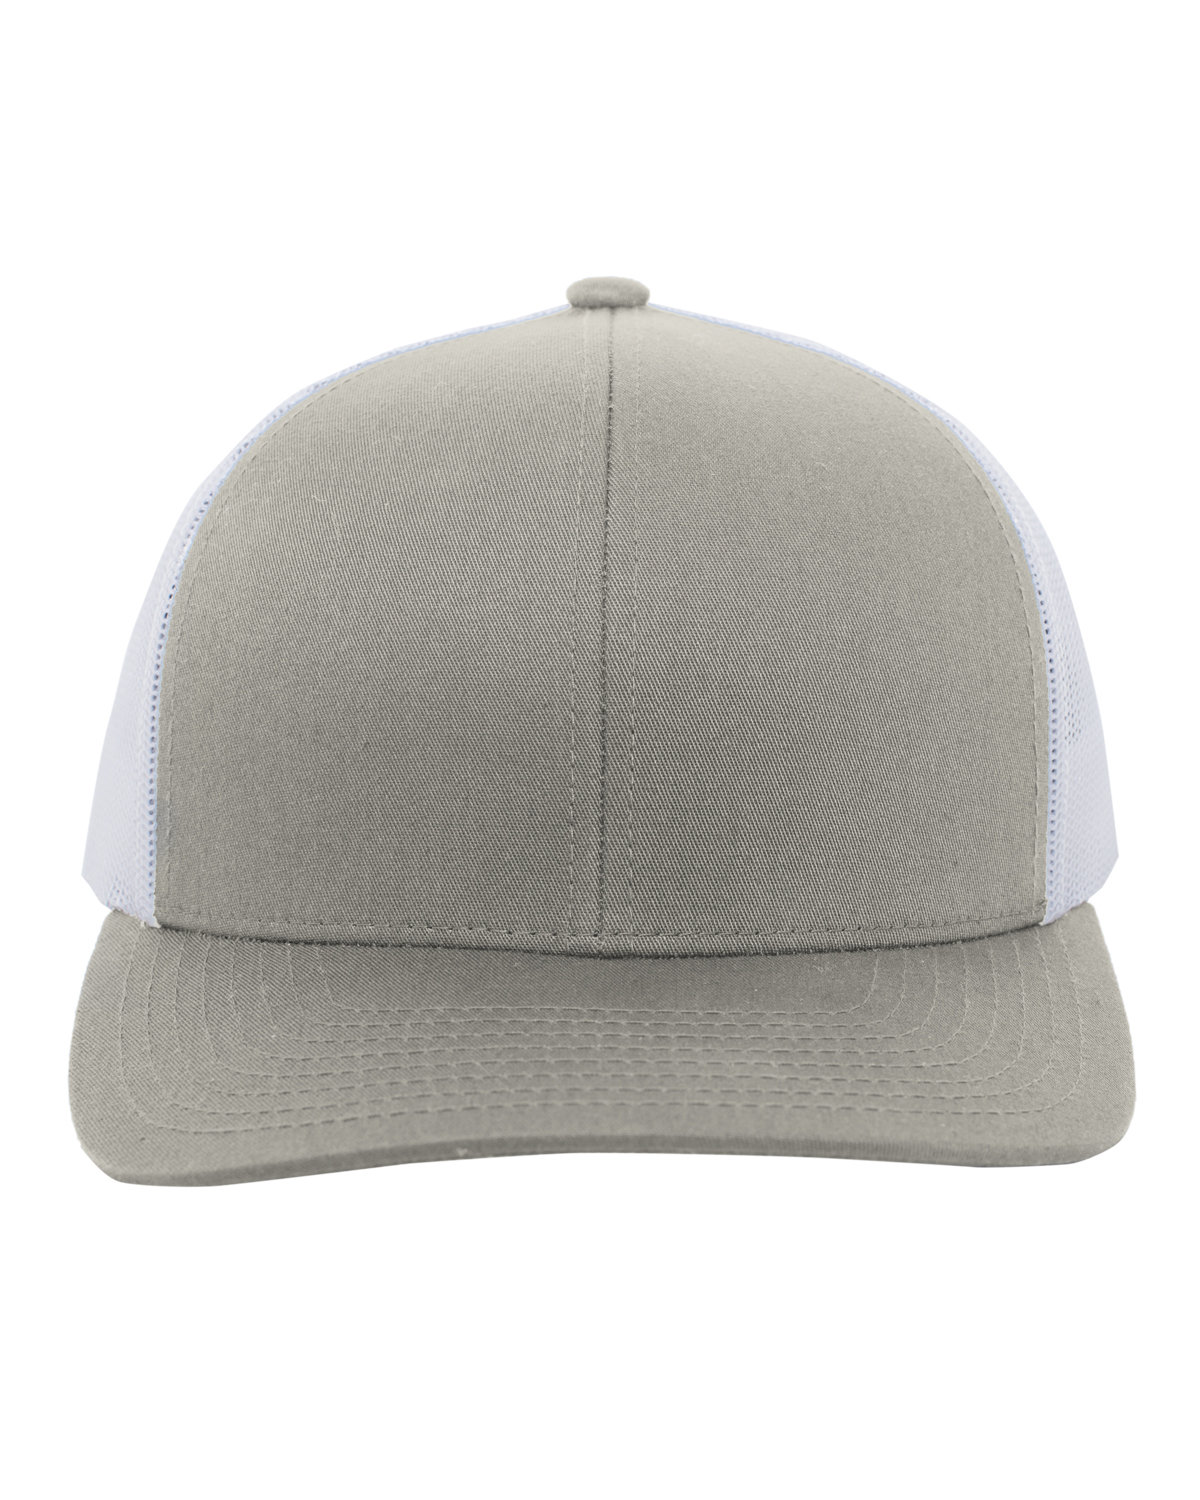 Pacific Headwear Trucker Snapback Hat SILVER/ WHITE 